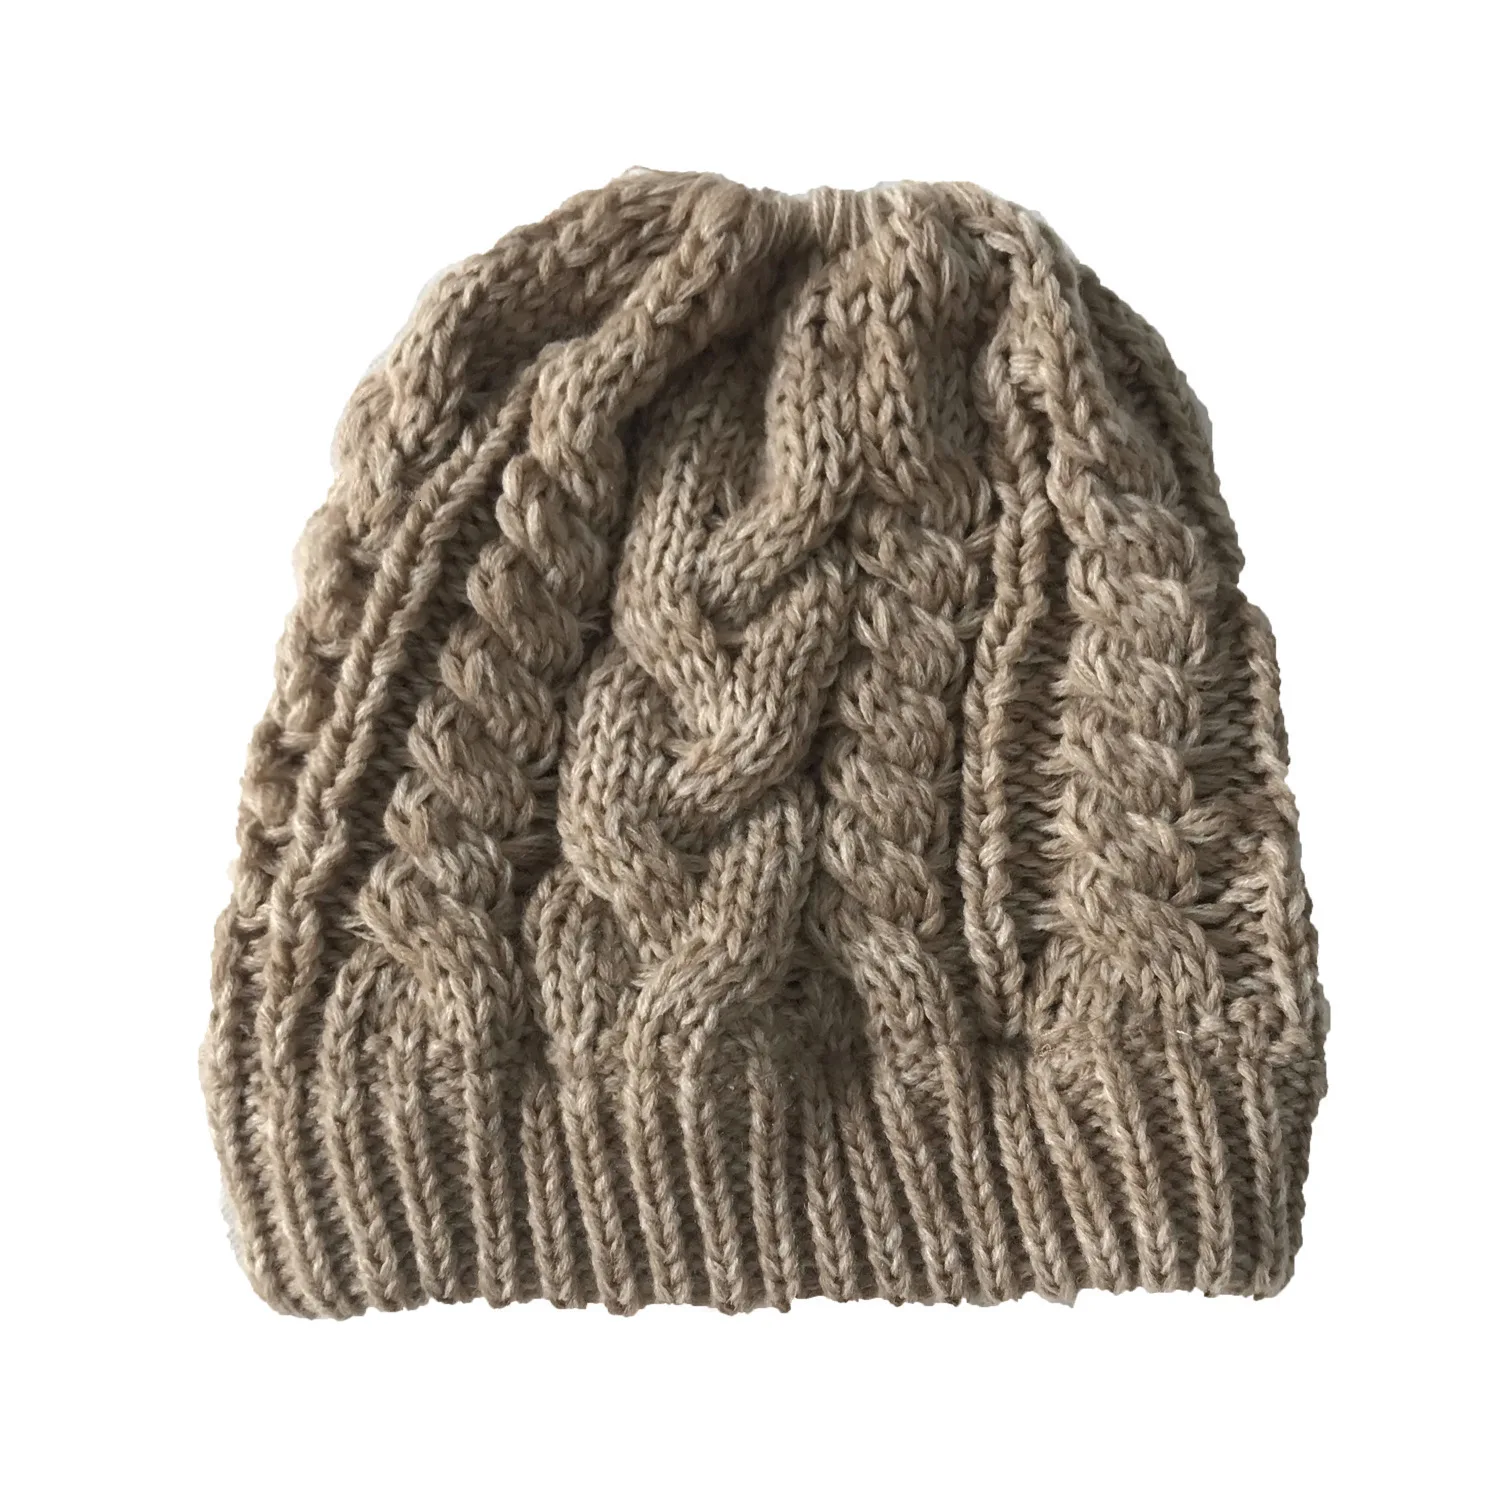 Зимняя шапка GKGJ, шерстяная короткая Шапка-бини с хвостом, Шапка-бини, мягкая вязаная шапочка с хвостом, Шапка-бини, шапка Beanie, шерстяной Для лыжной езды - Цвет: C05